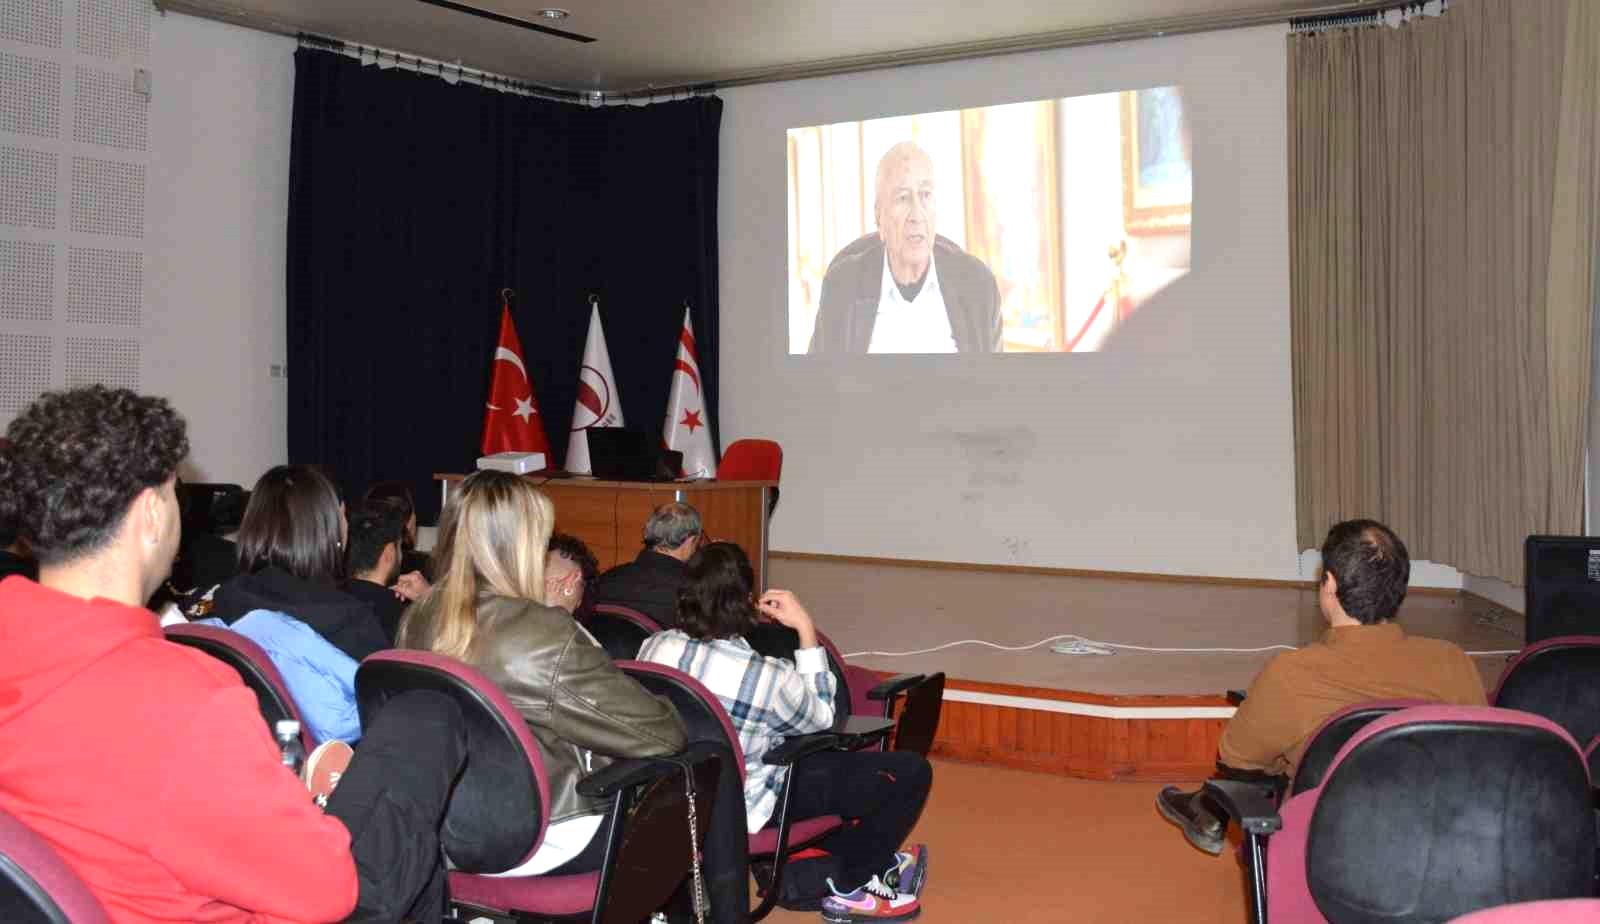 Türk basın tarihi, belgesel gösterimi ile mercek altına alındı